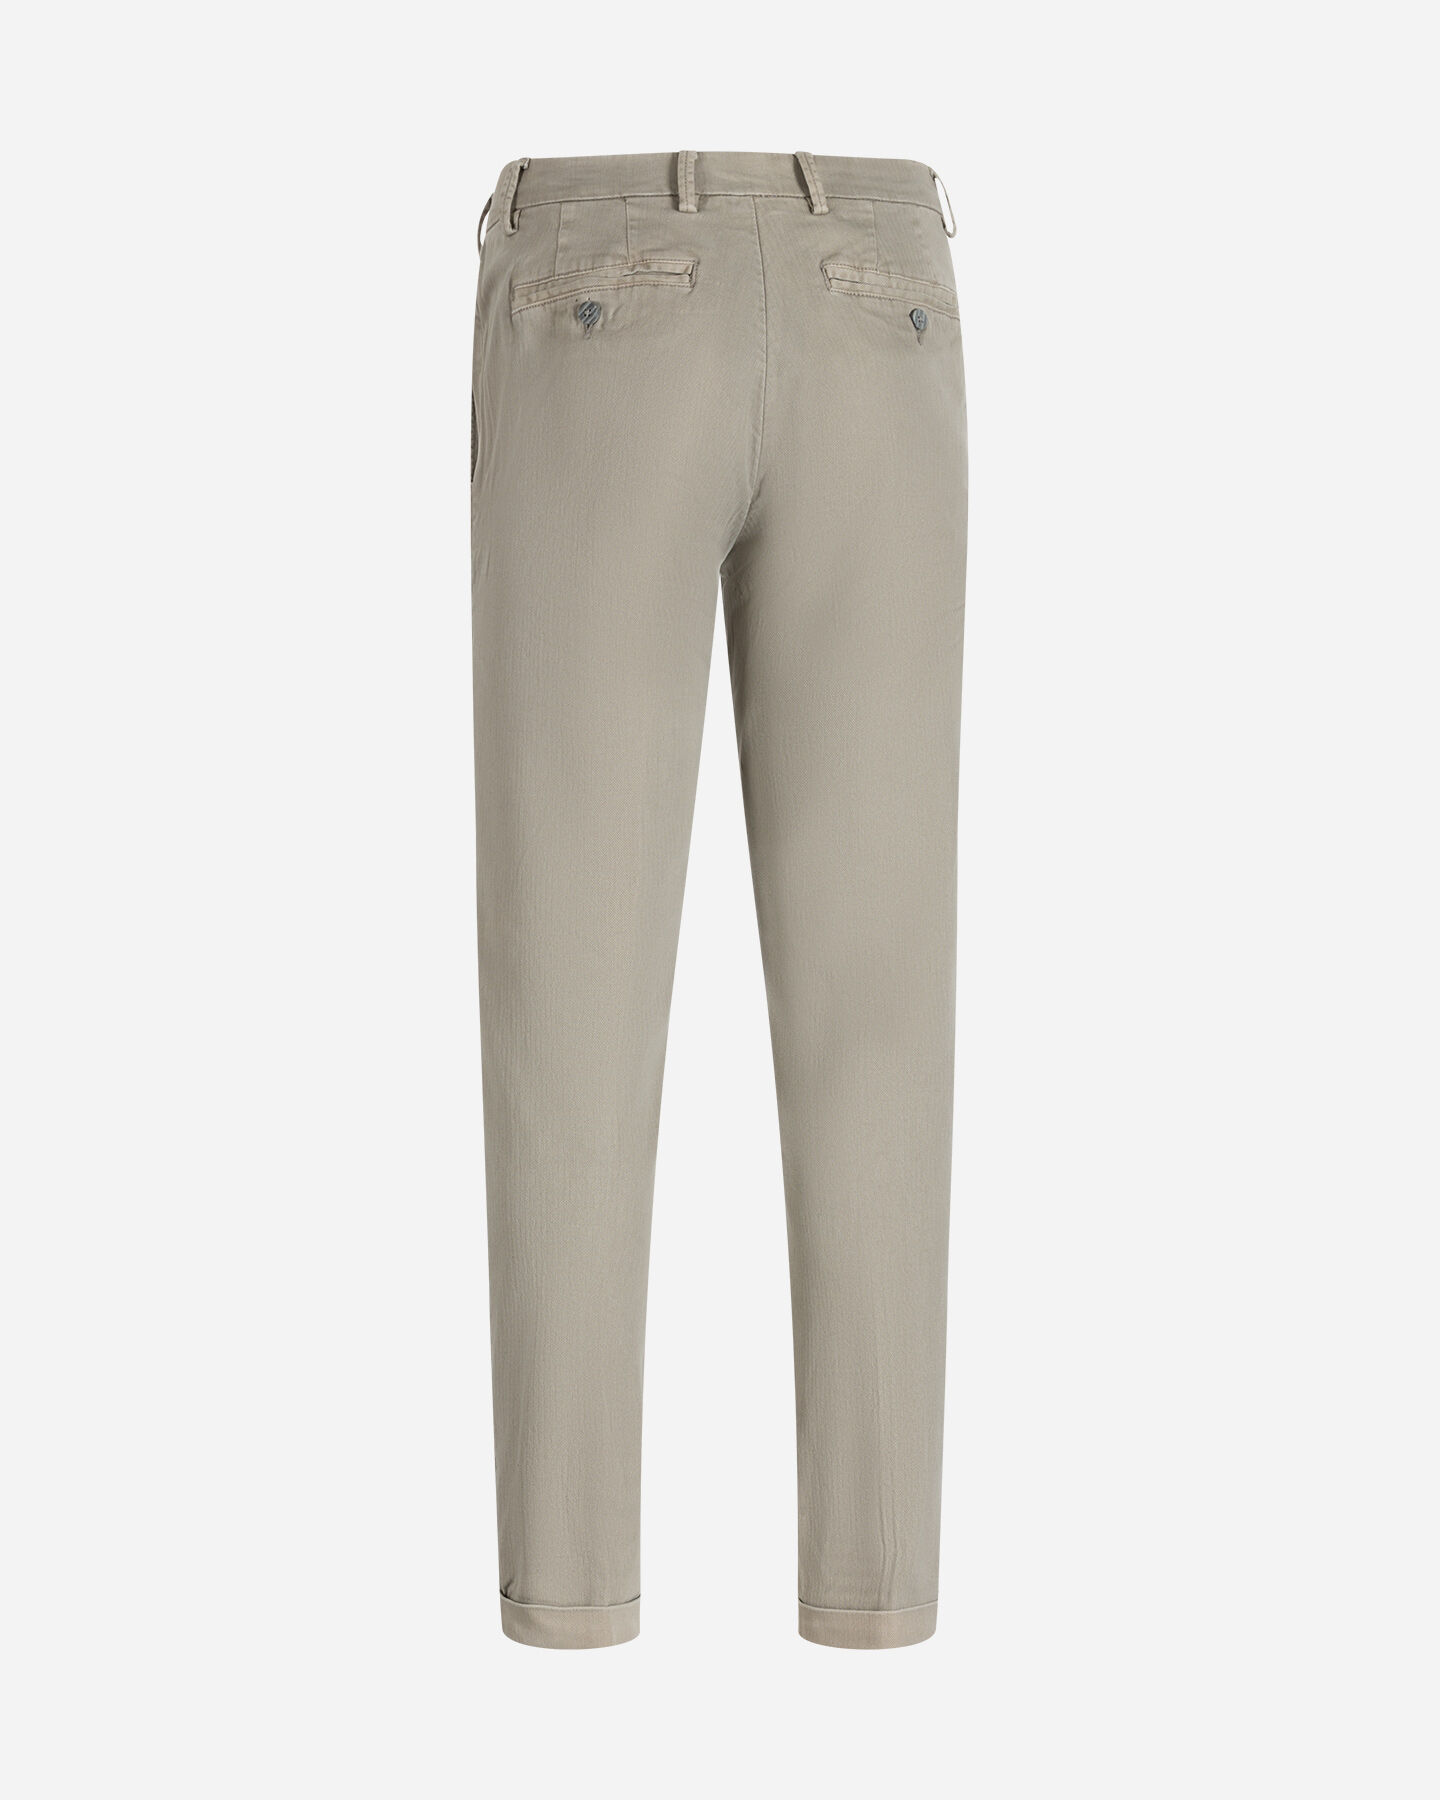  Pantalone BEST COMPANY BRERA M S4127020|903|46 scatto 5